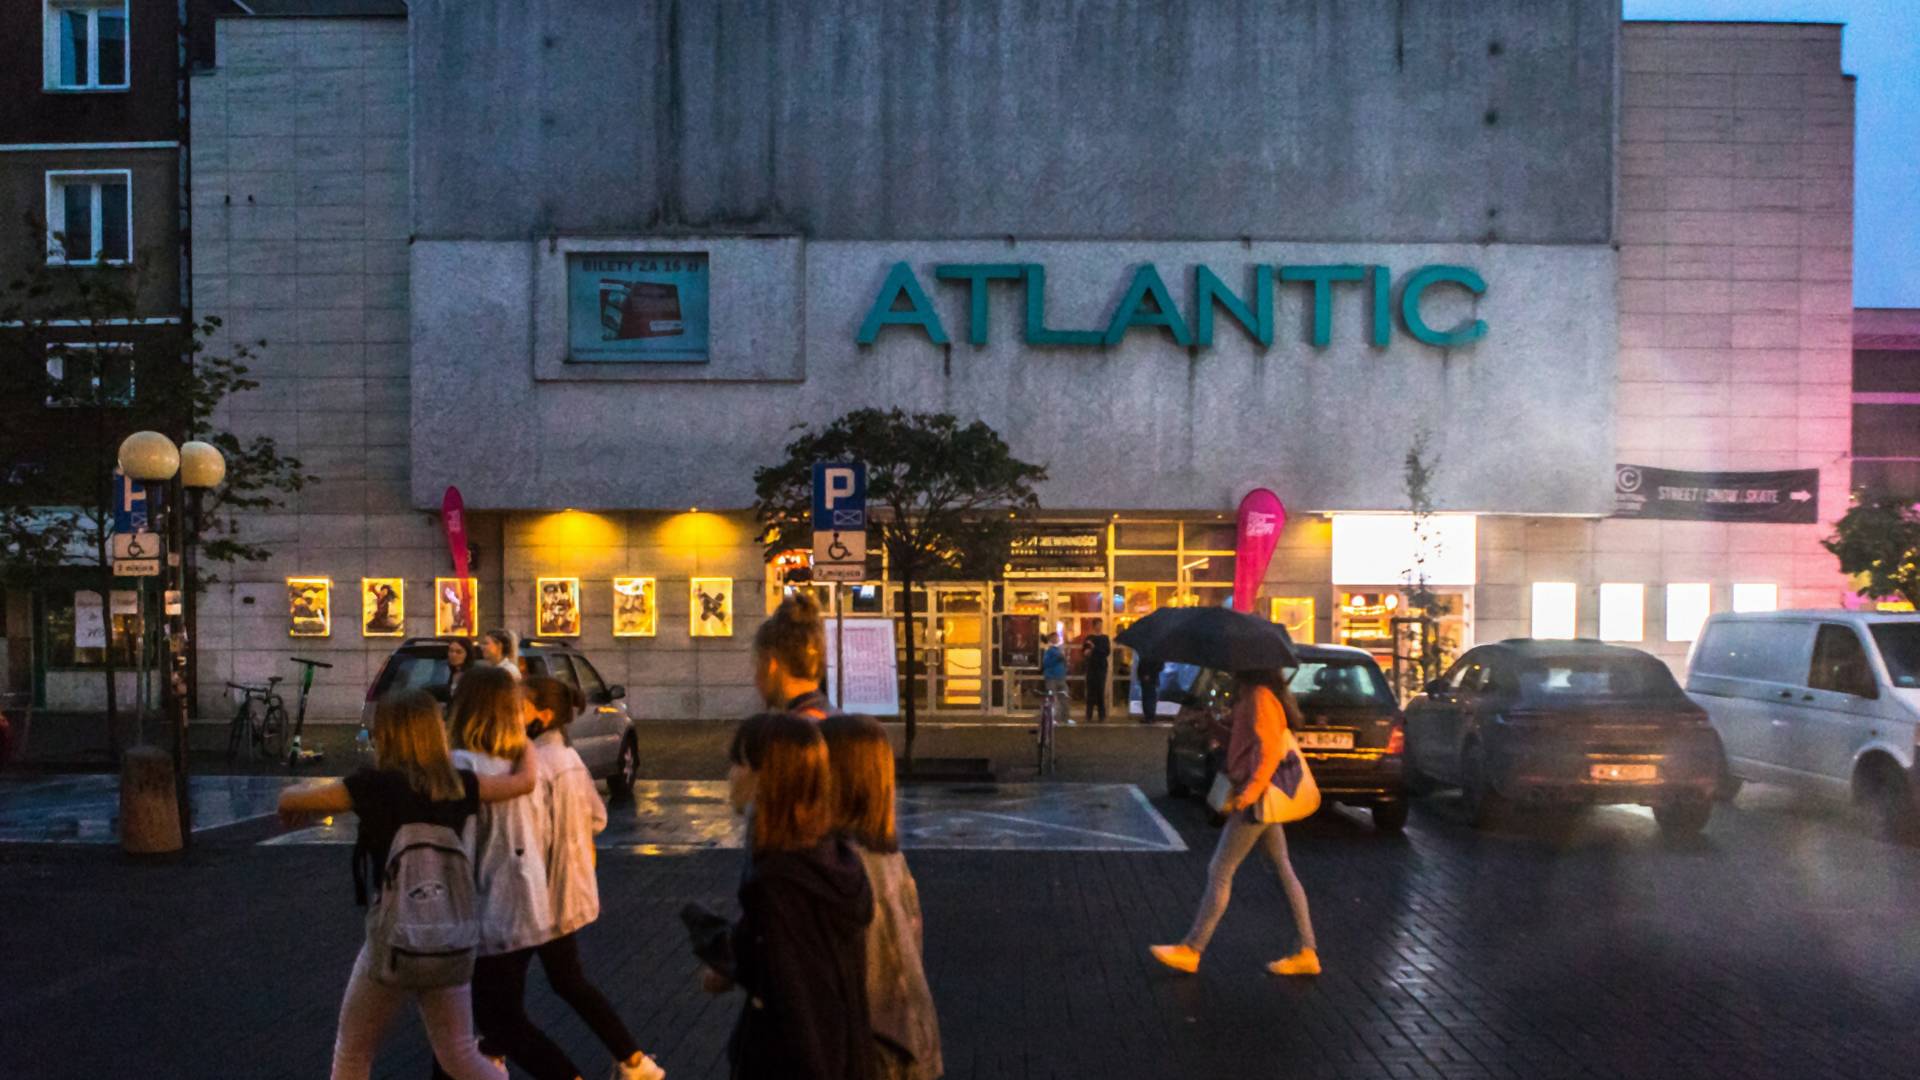 Warszawskie kino Atlantic żegna się z widzami. "Ostatni rok był dla nas bardzo ciężki"